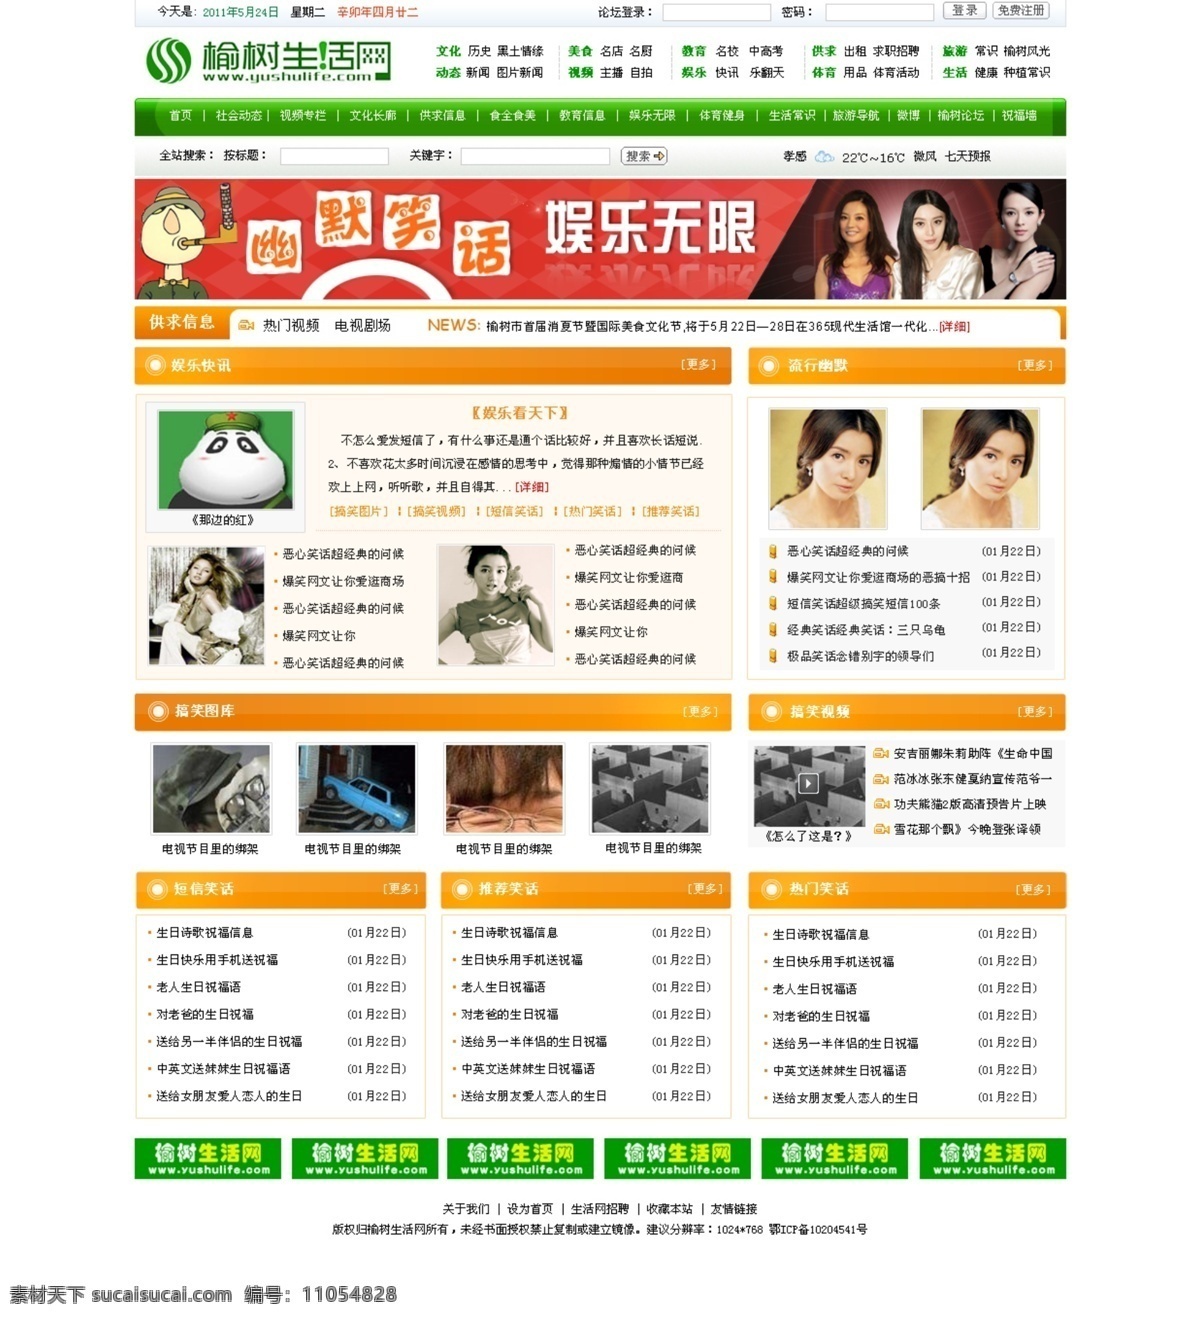 门户 网页模板 门户网页模板 源文件 中文模版 娱乐网页模板 网页素材